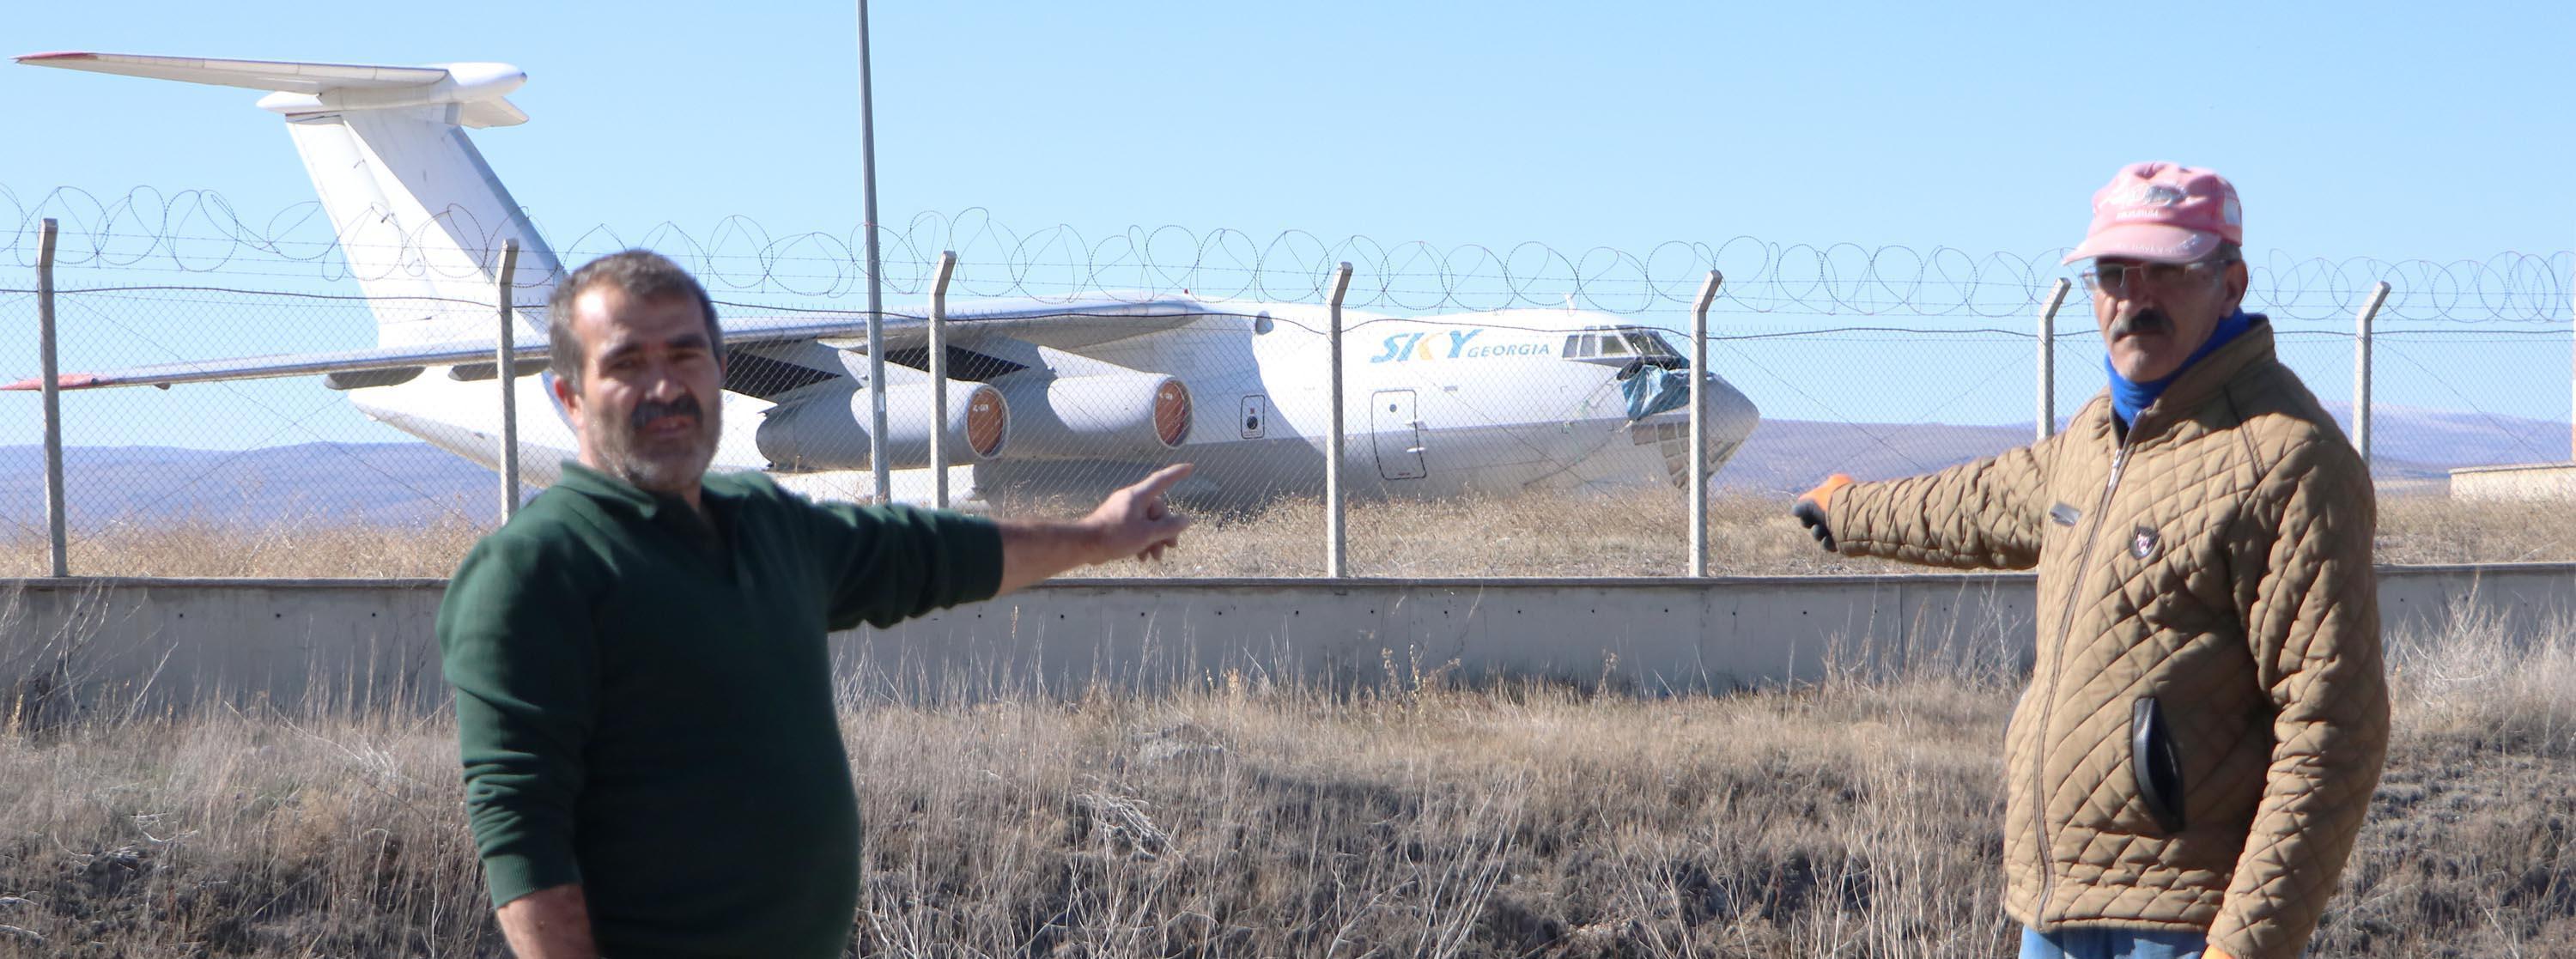 Gürcistanın yardım uçağı 10 yıldır Erzurumda bekliyor